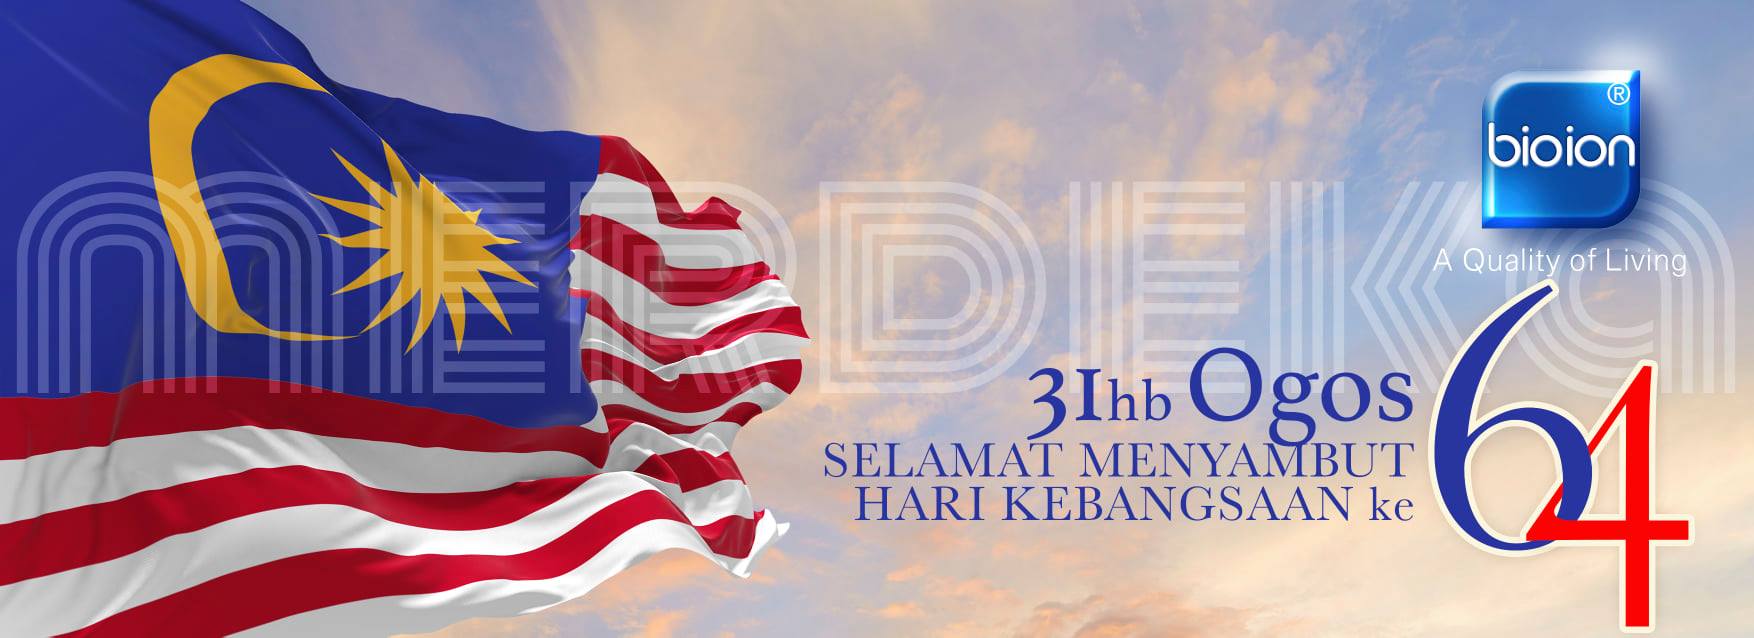 Hari 64 ke menyambut kebangsaan selamat Malaysia Merdeka